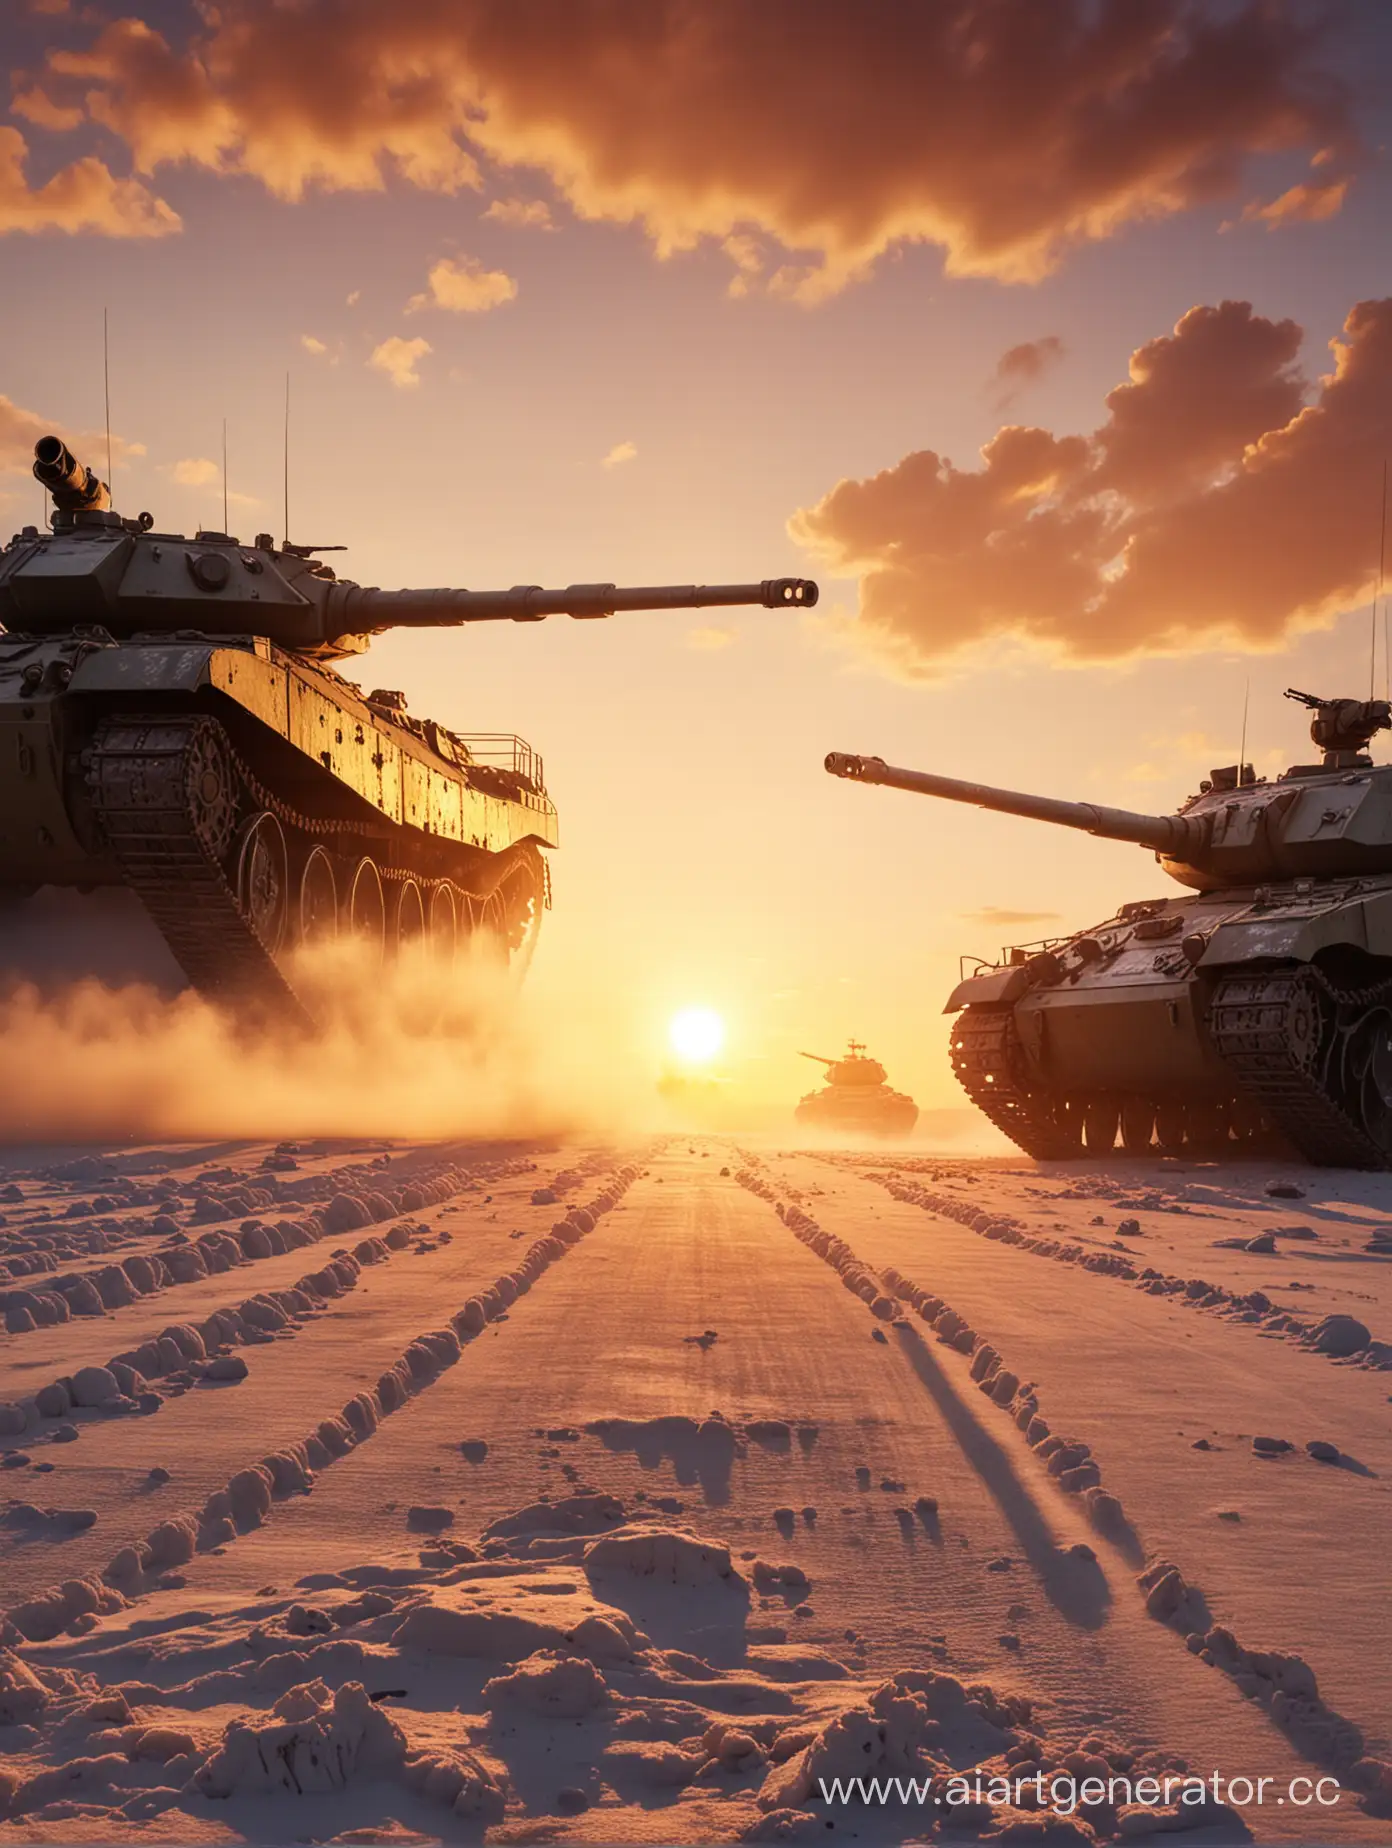 противостояние двух танков друг напротив друга СССР и США, будущее, мрачно, 4K, холодная война, сзади на фоне закат